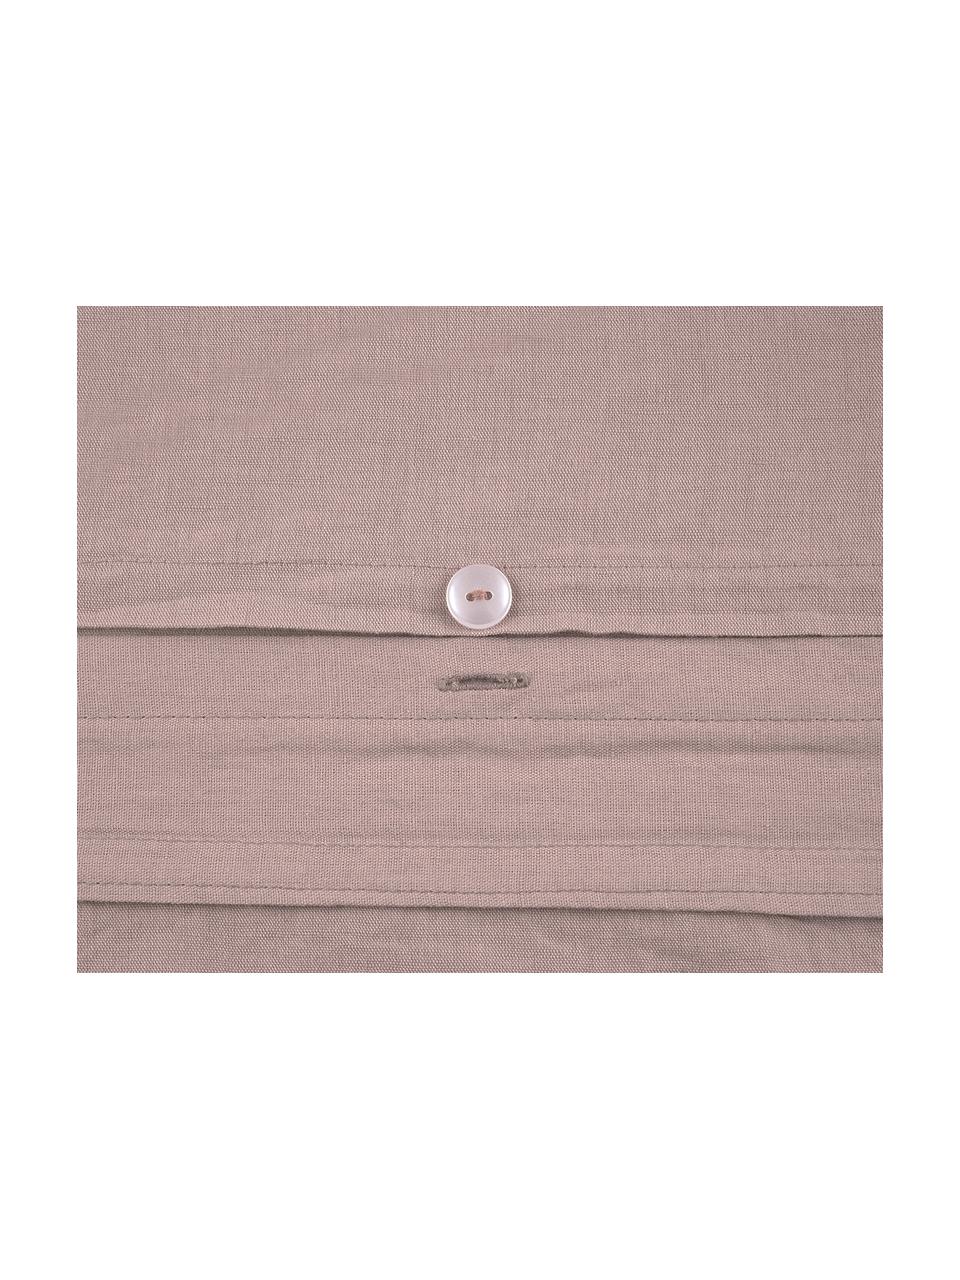 Parure copripiumino in lino lavato Carla, 52% lino, 48% cotone
Con effetto stonewashed, Malva, 200 x 200 cm